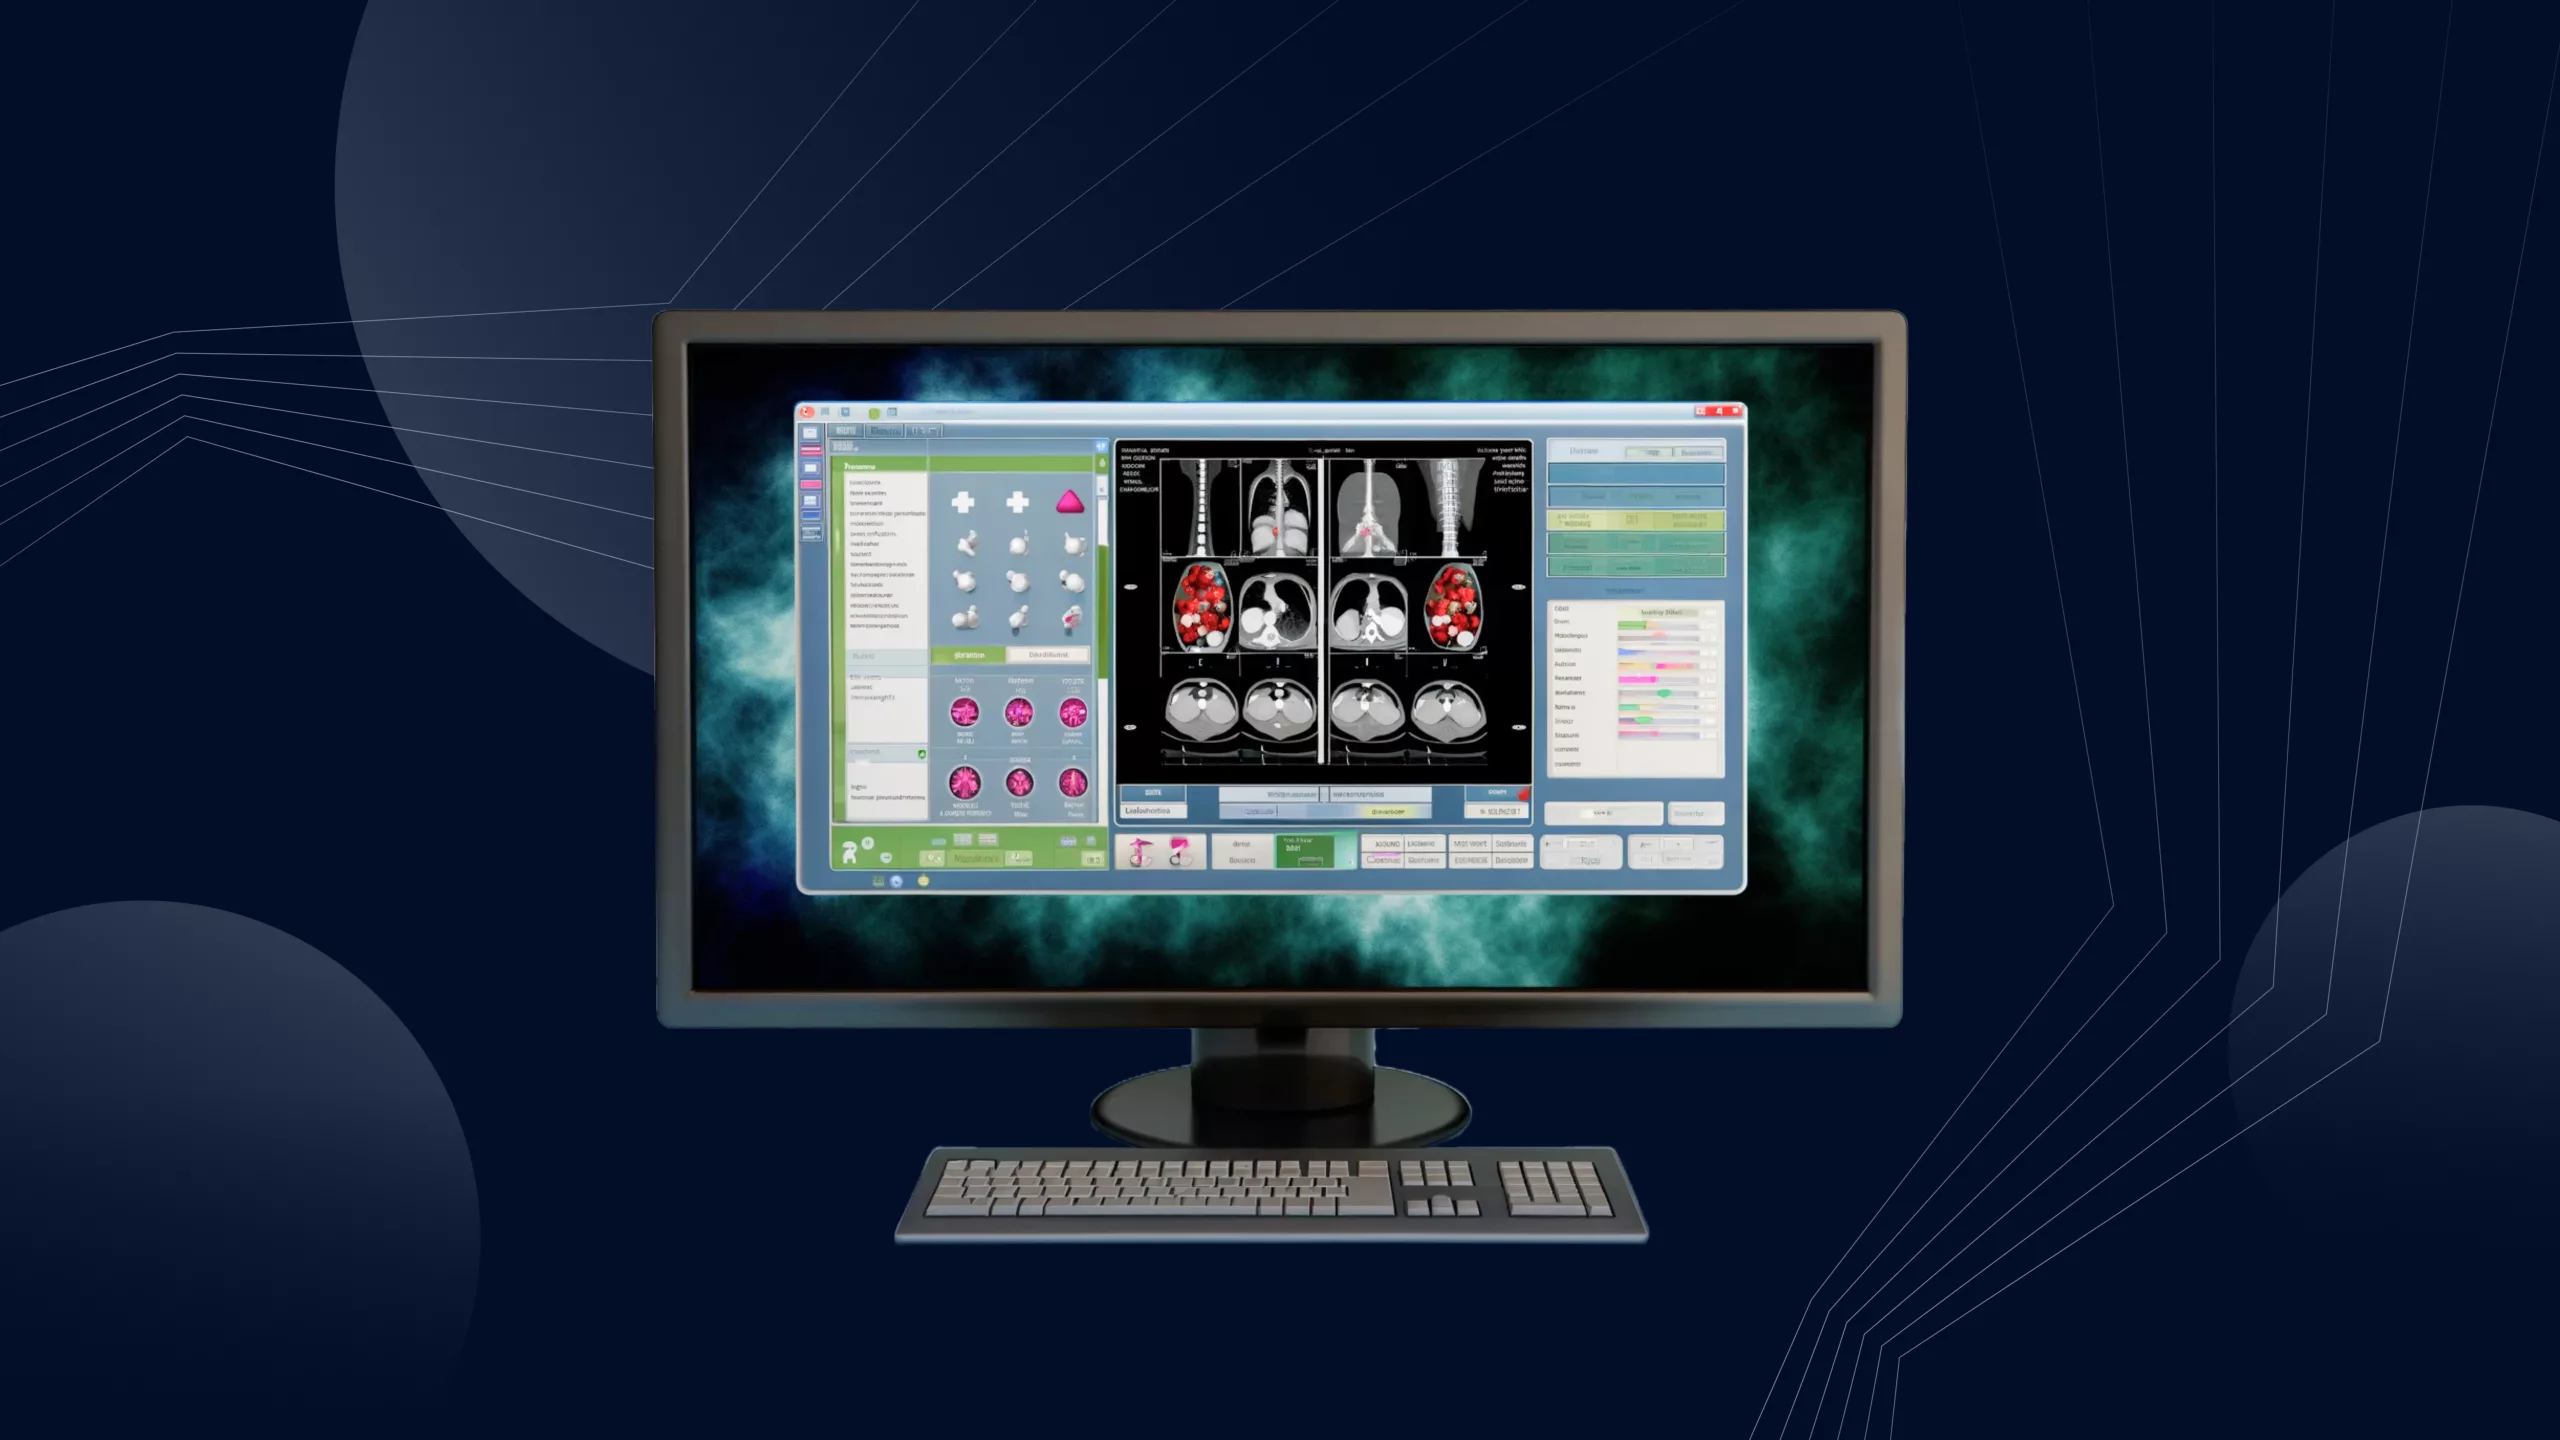 Medical imaging and diagnostics software